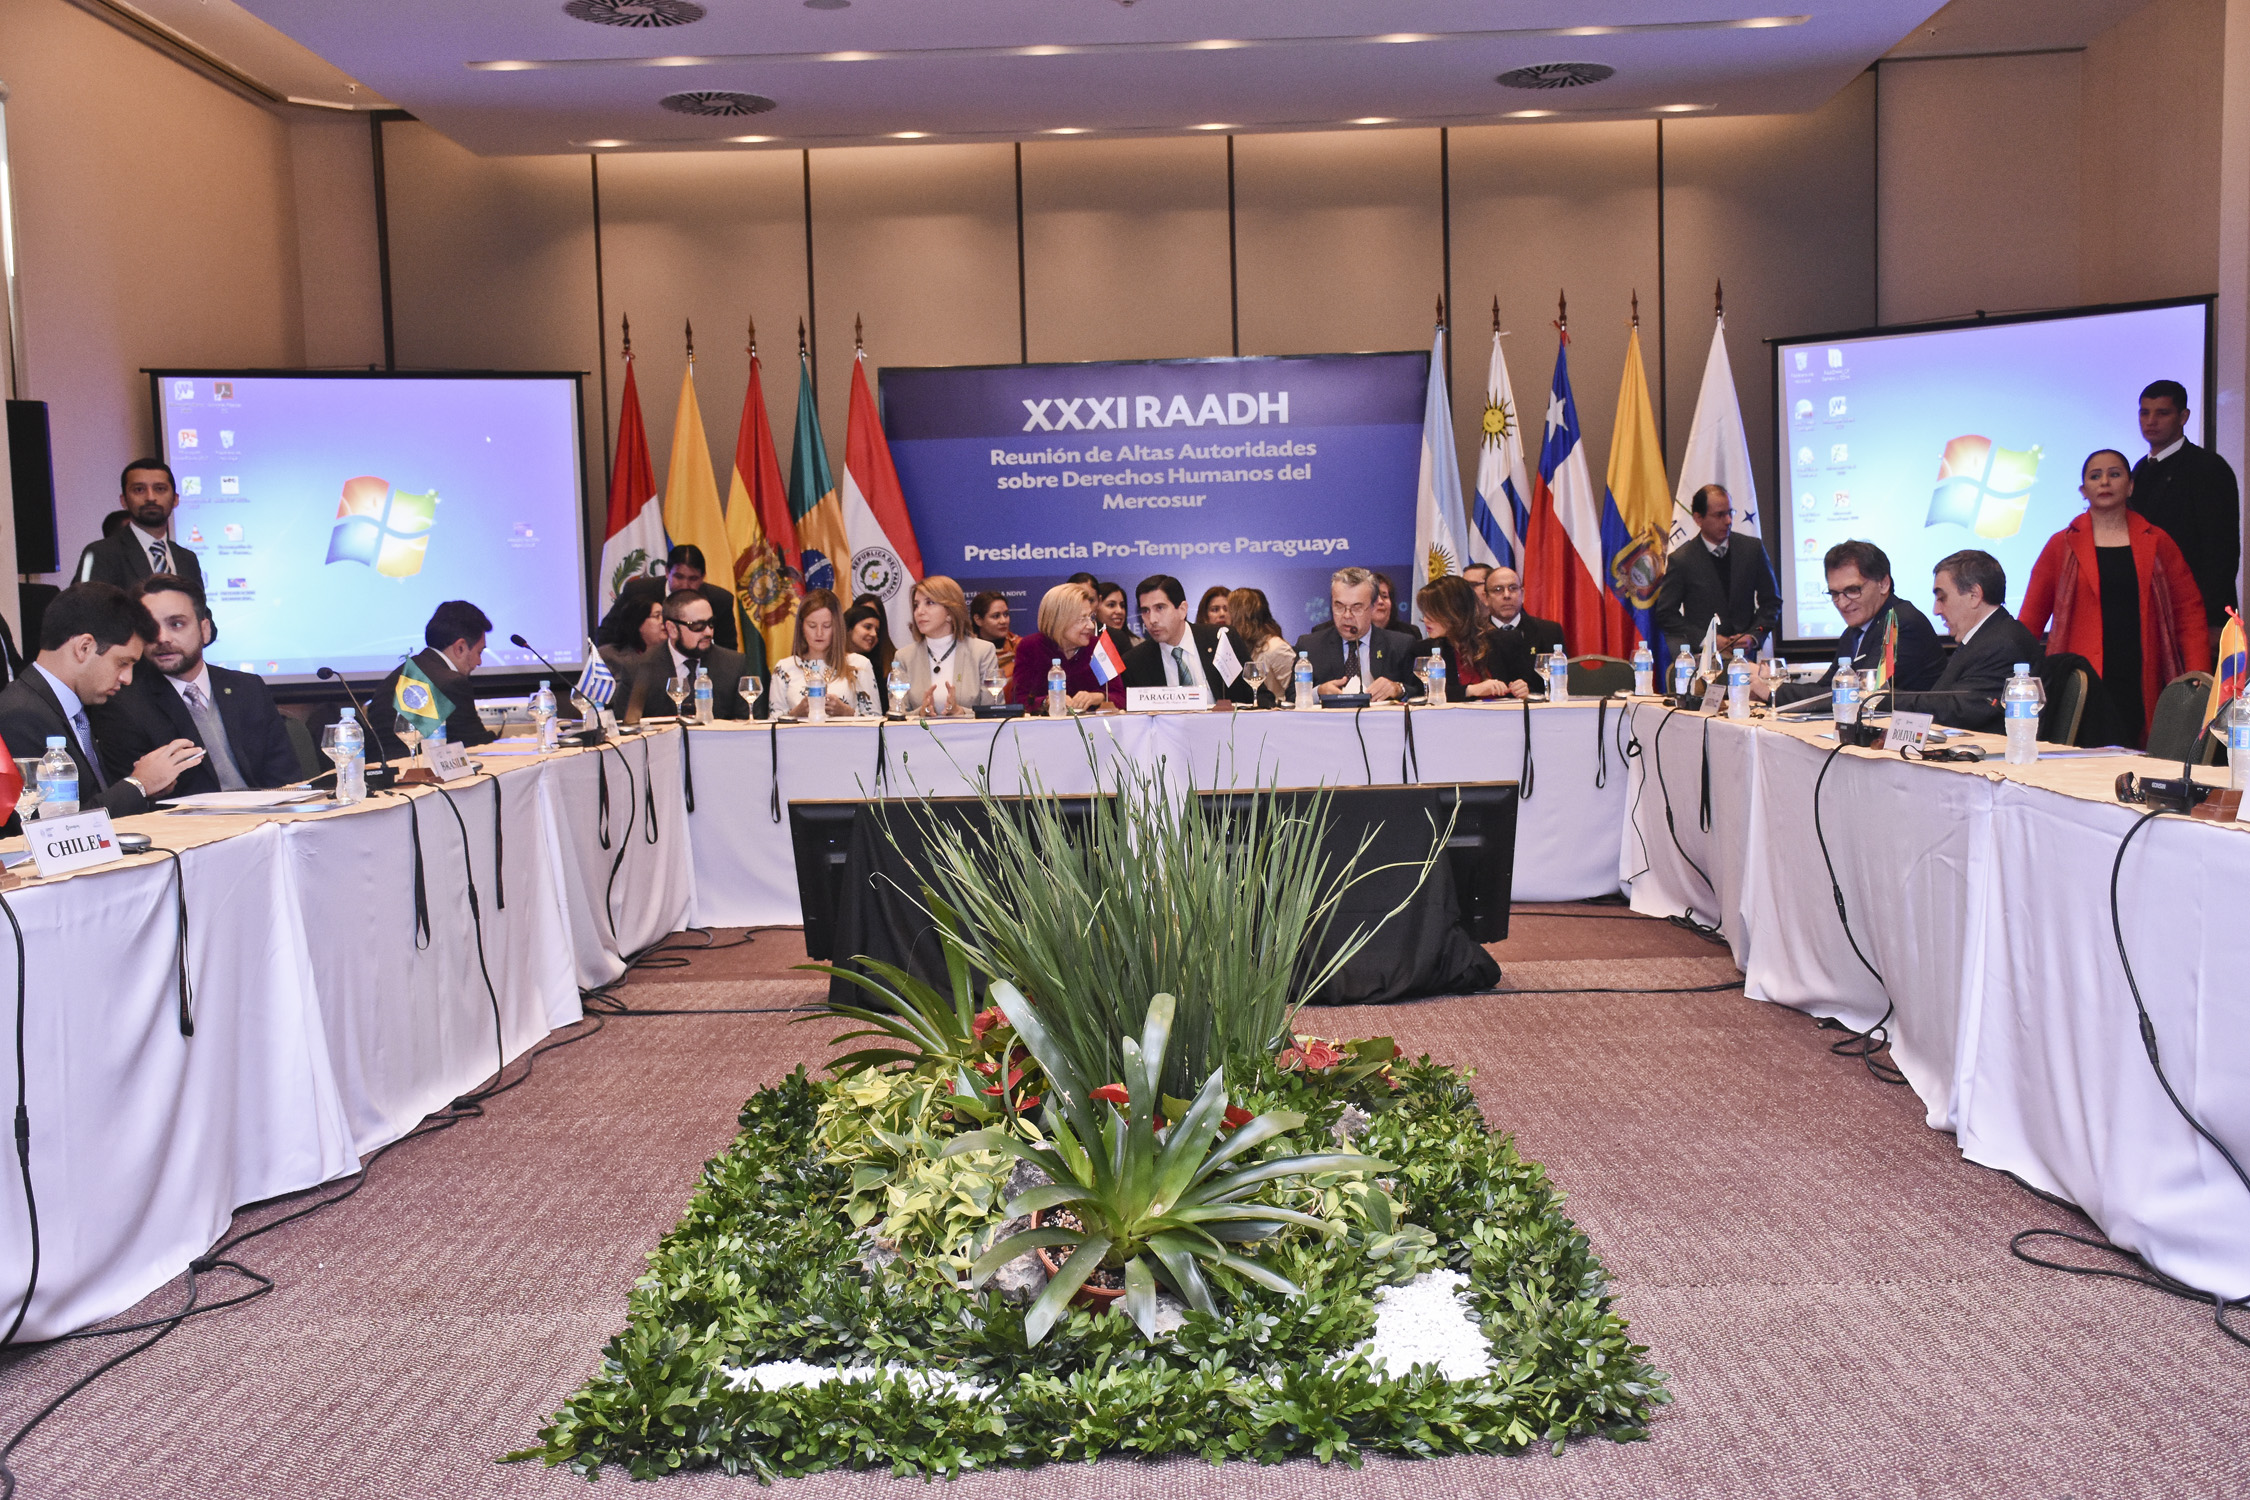 Viceministro de RR.EE. destaca impulso de rostro humano del Mercosur en inauguración de la plenaria de la XXXI Reunión de Altas Autoridades en DD.HH.